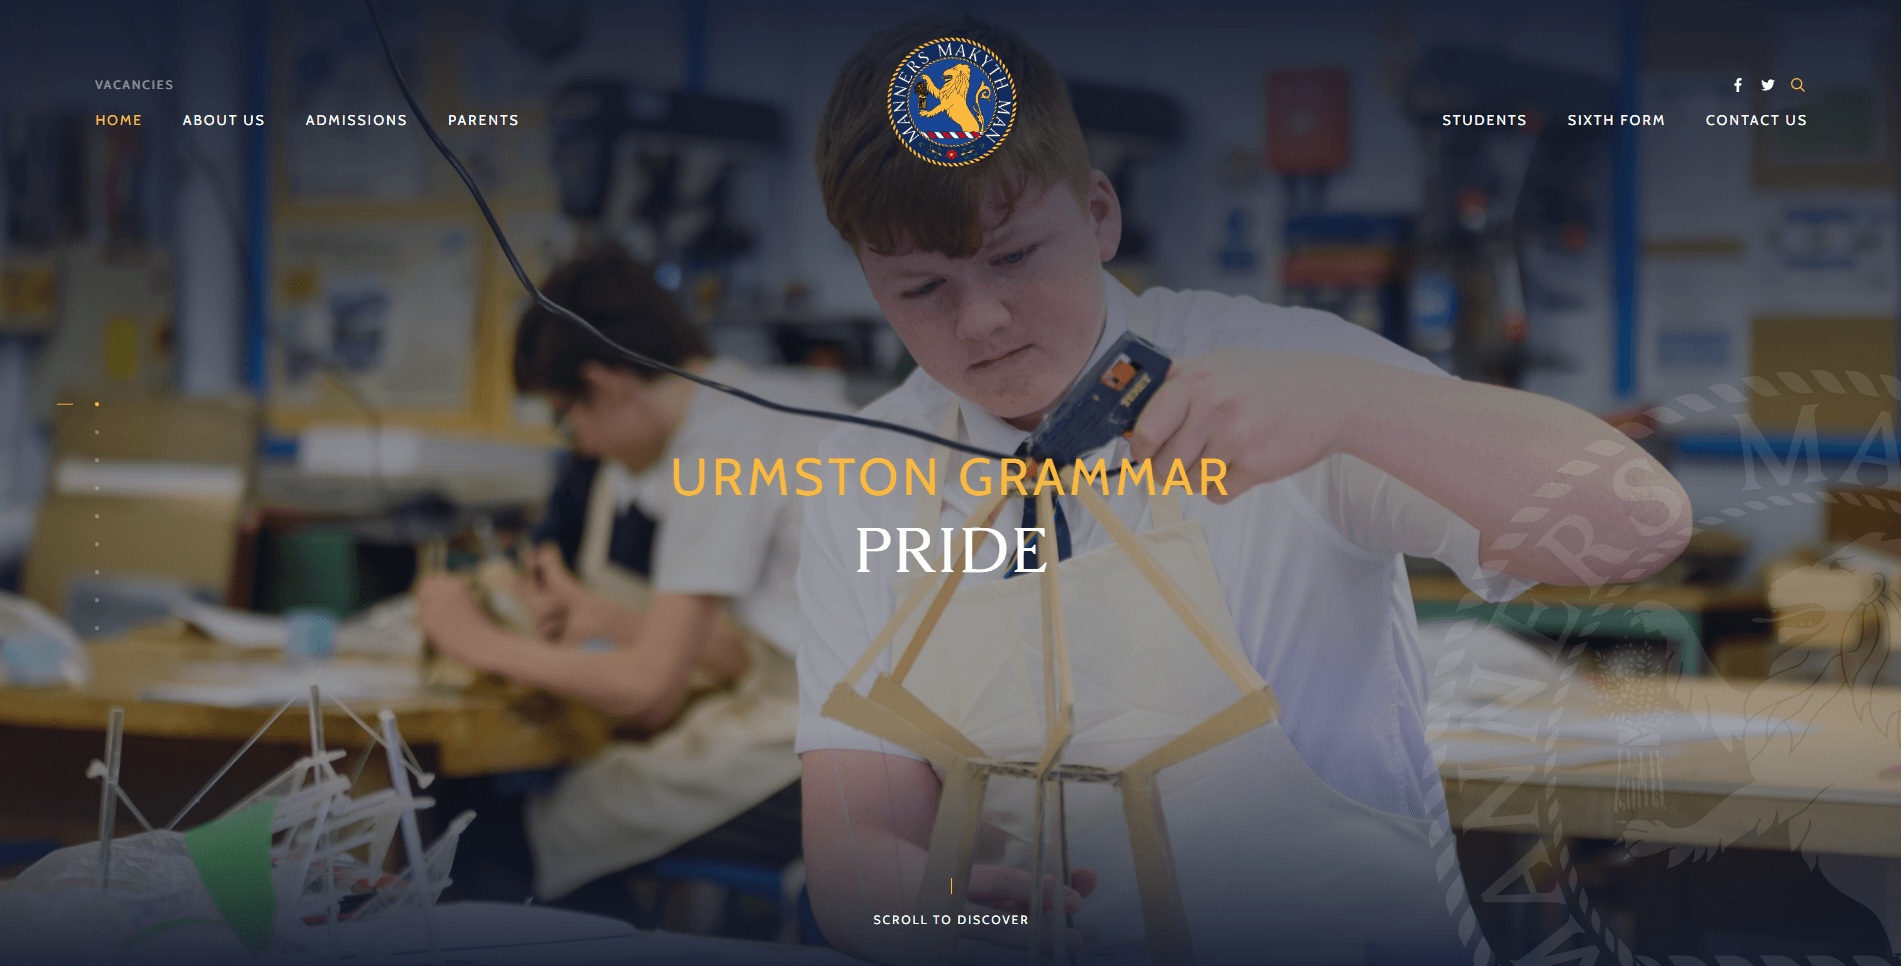 Urmston Grammar Academy